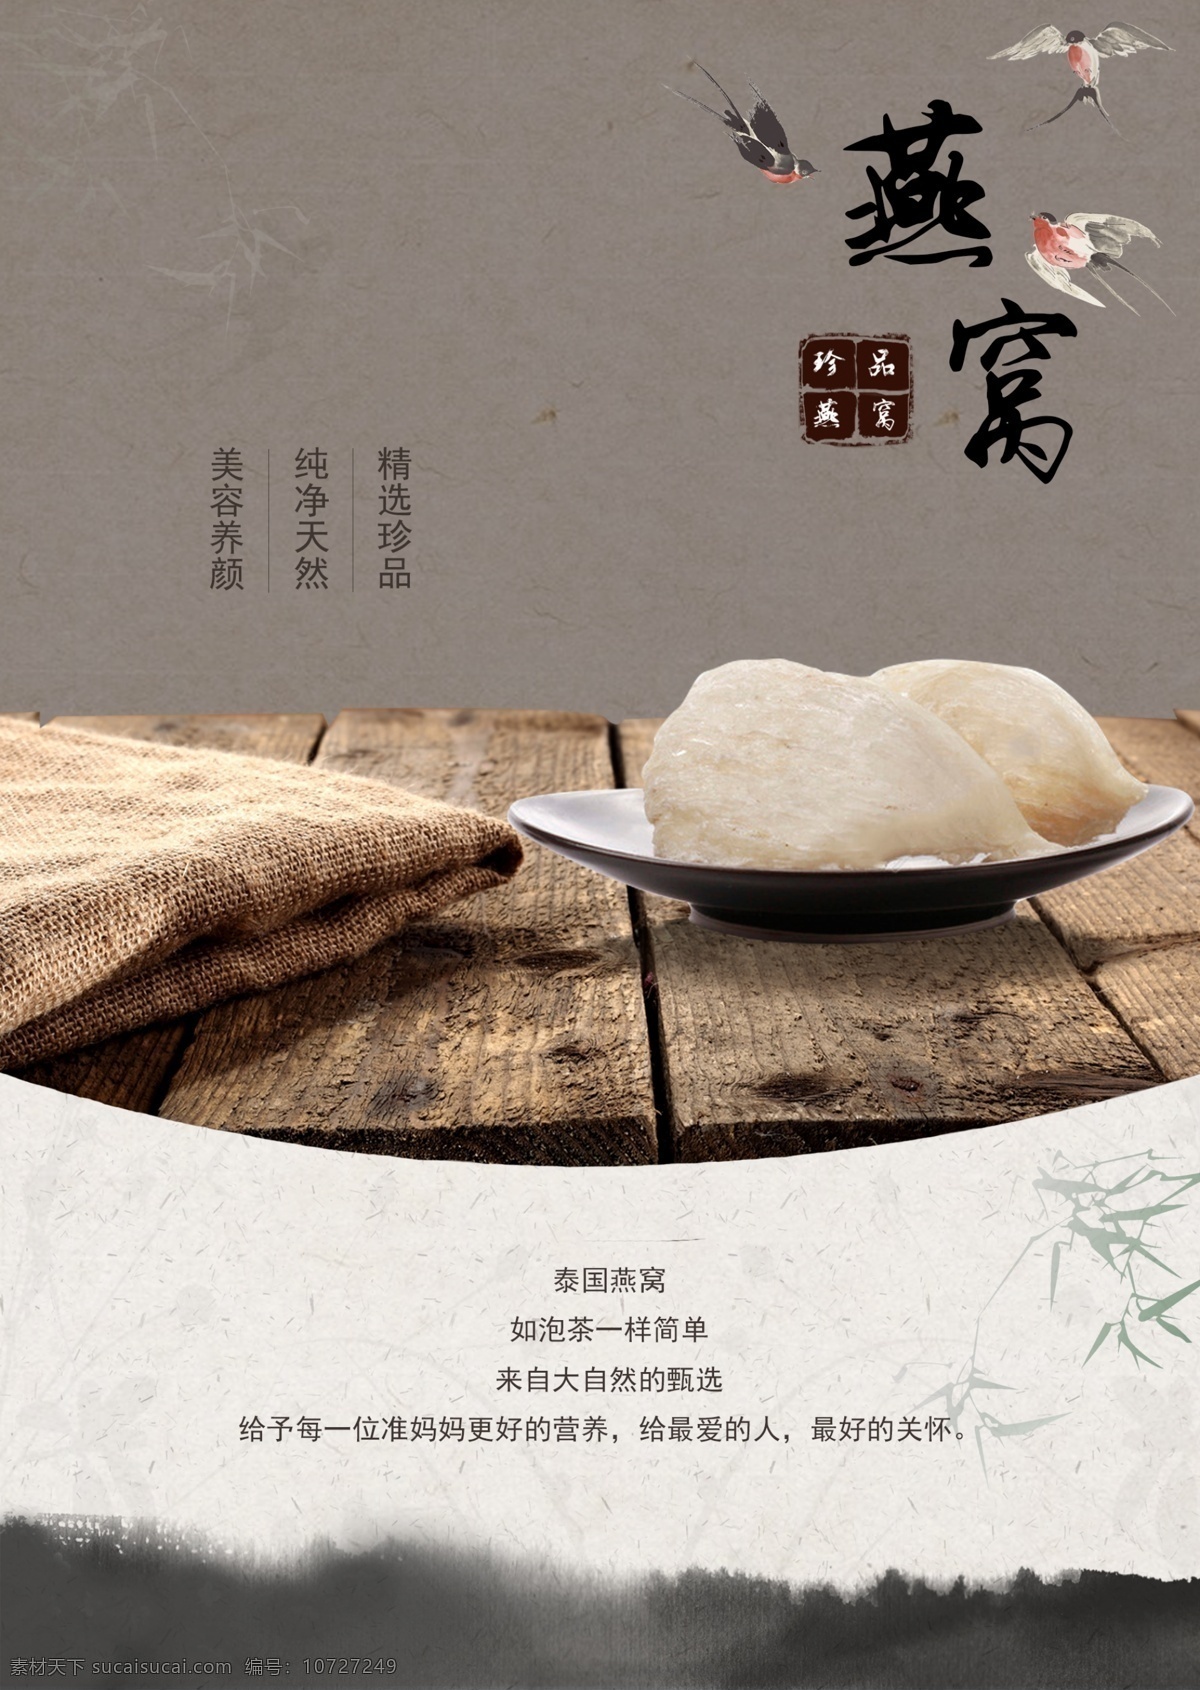 燕窝 滋补 品类 海报 宣传 模板 中国风 营养品 补品